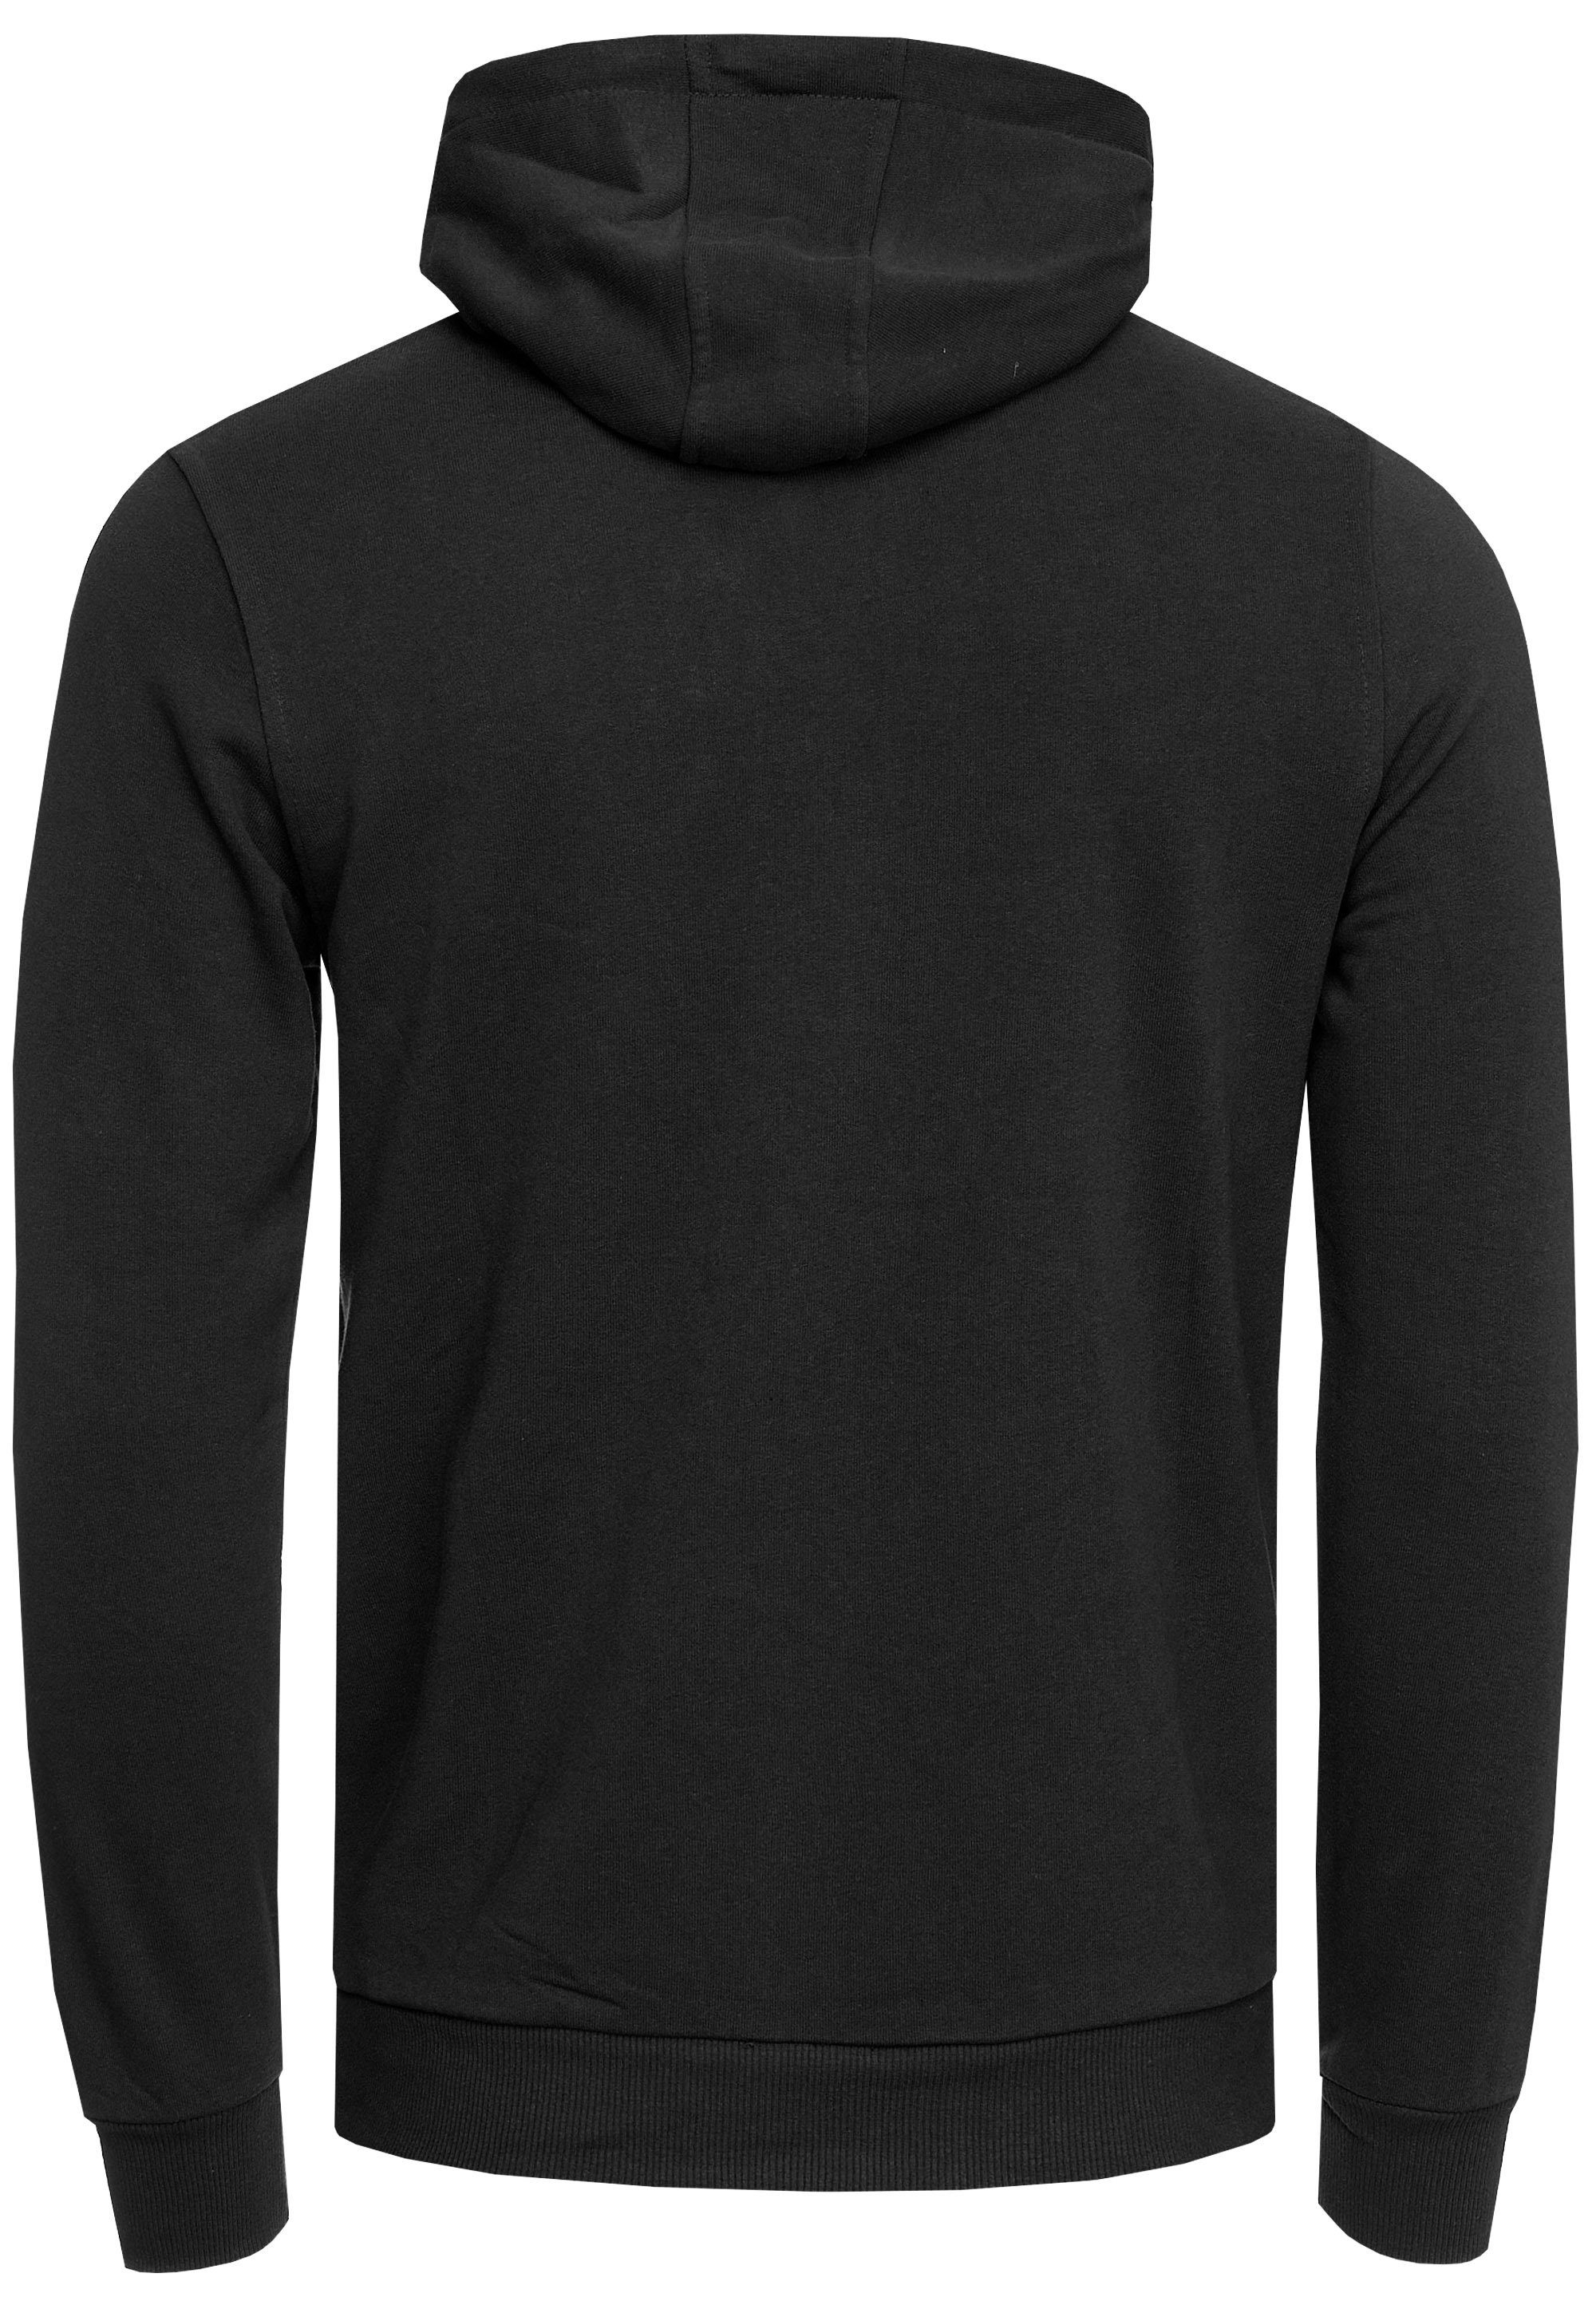 Neal Kapuzensweatshirt Kapuze 2020 Rusty schwarz mit cooler